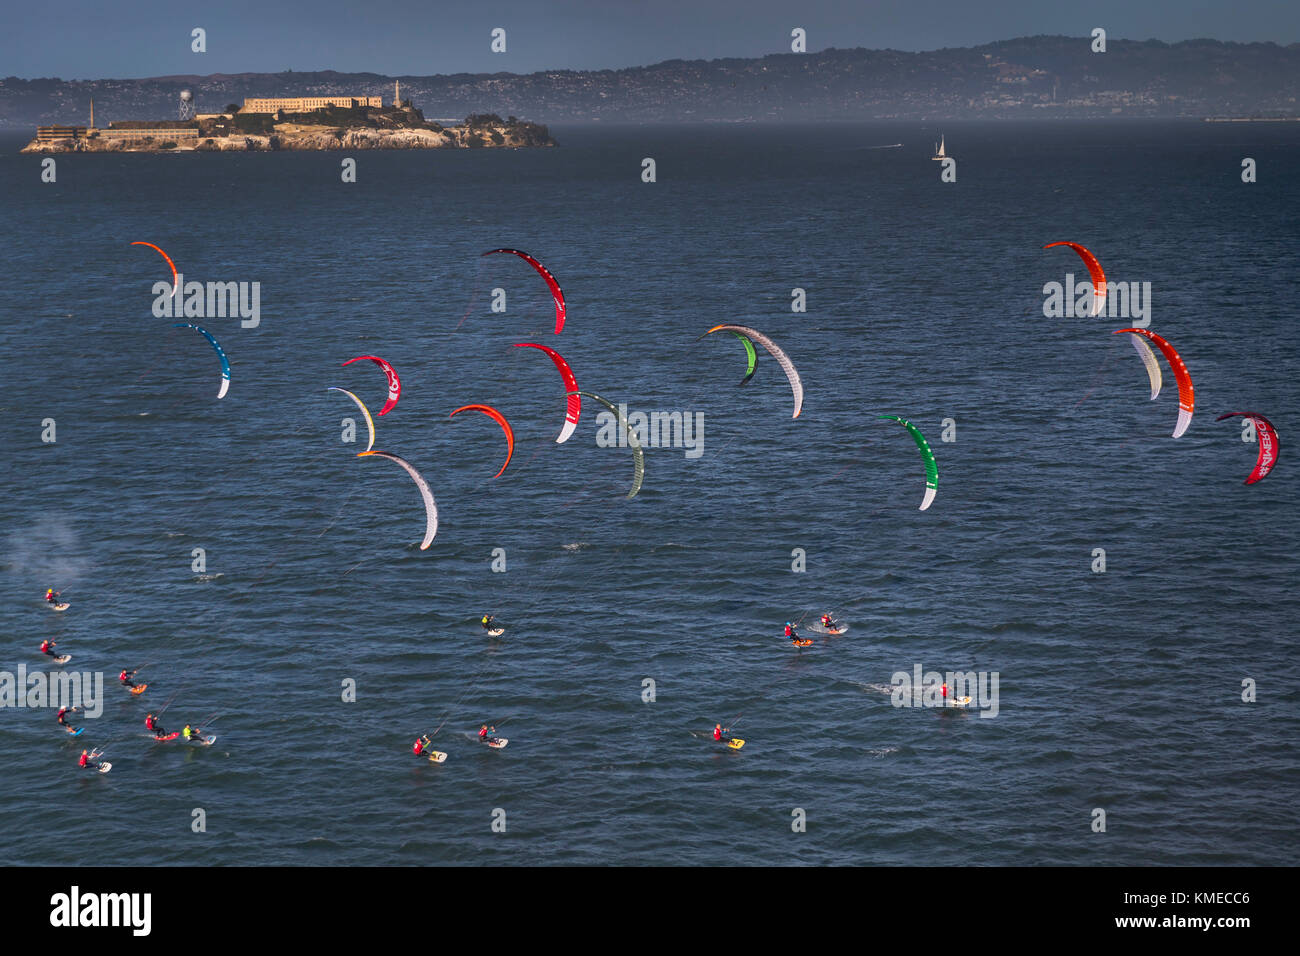 Kite boarding race, Alcatraz Island, San Francisco Bay, California, USA Stock Photo